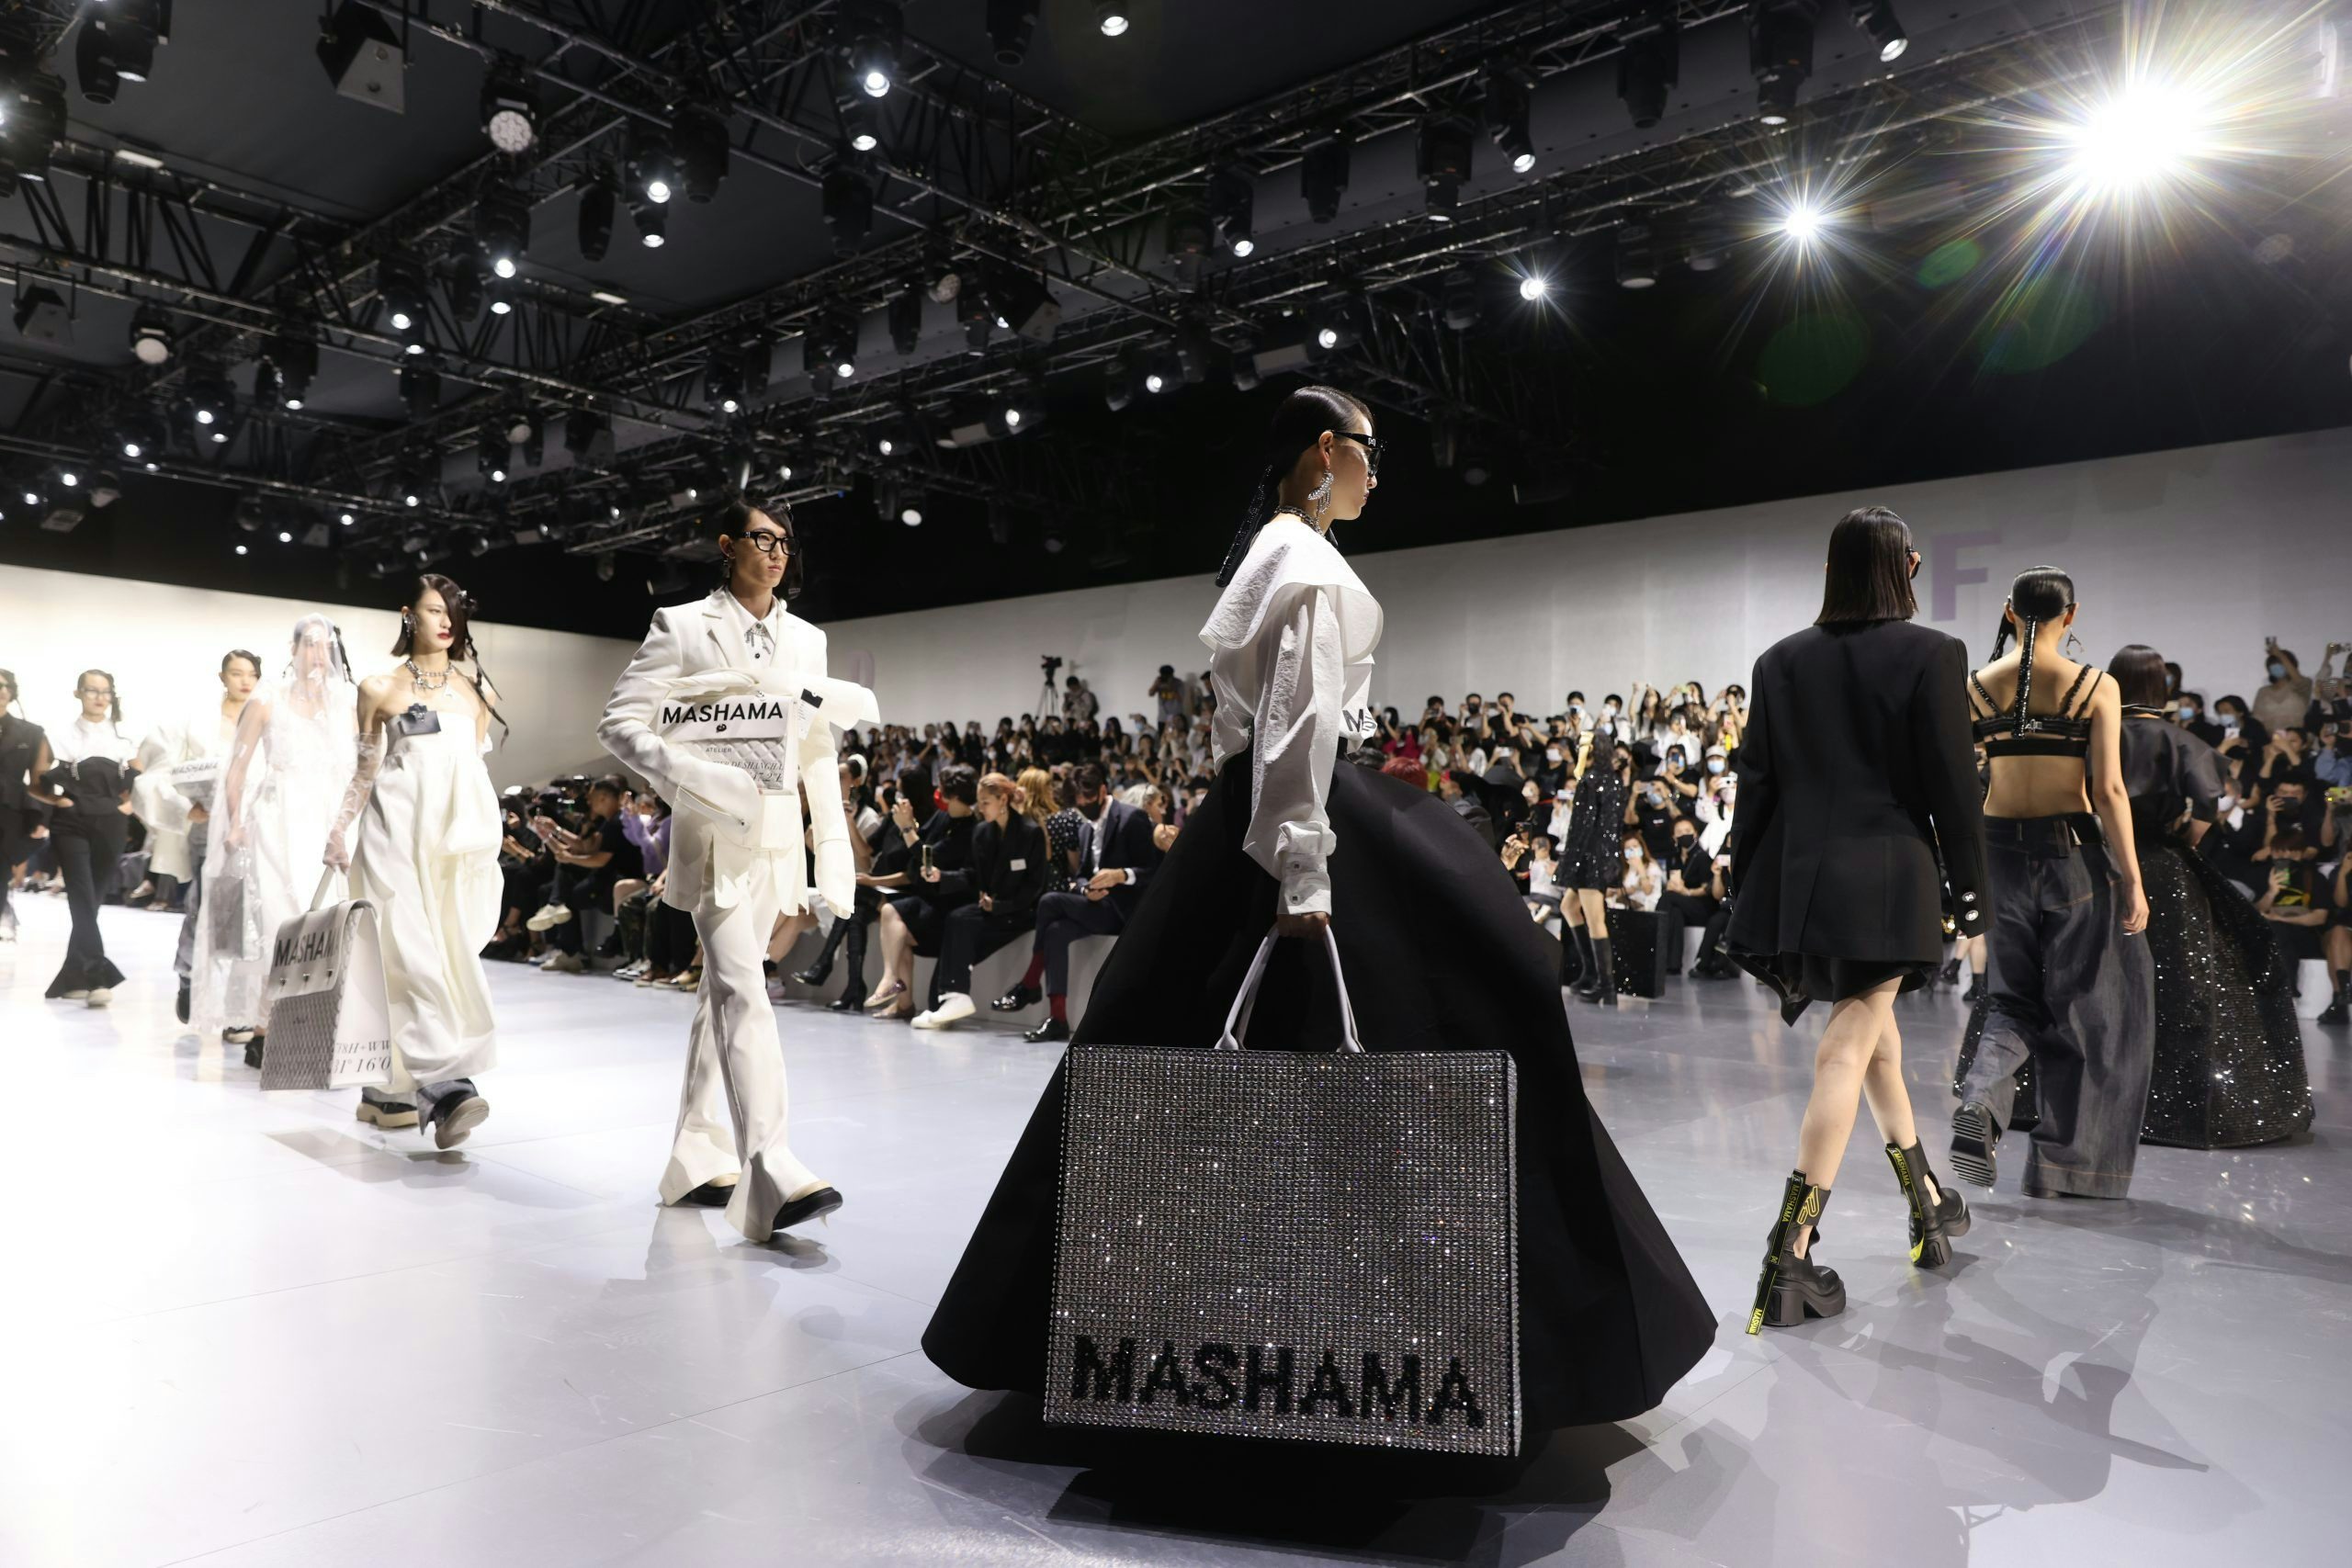 Can Chinese Designers Shine at Milan Fashion Week? Ask Hui